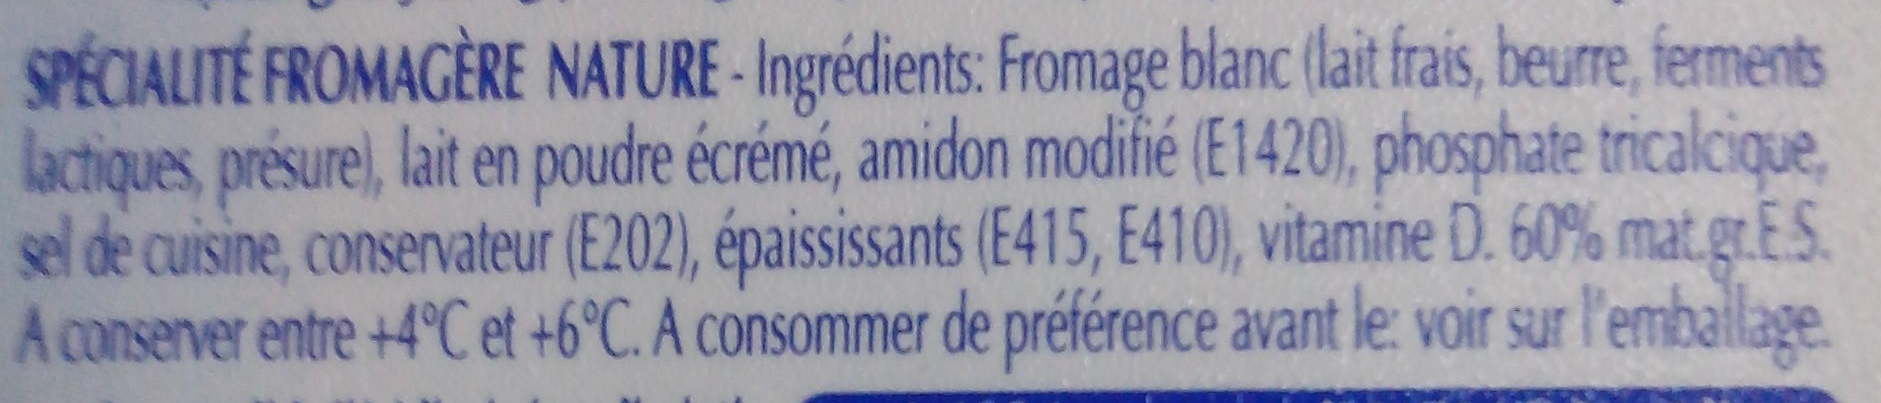 Fraidoux - Ingredients - fr